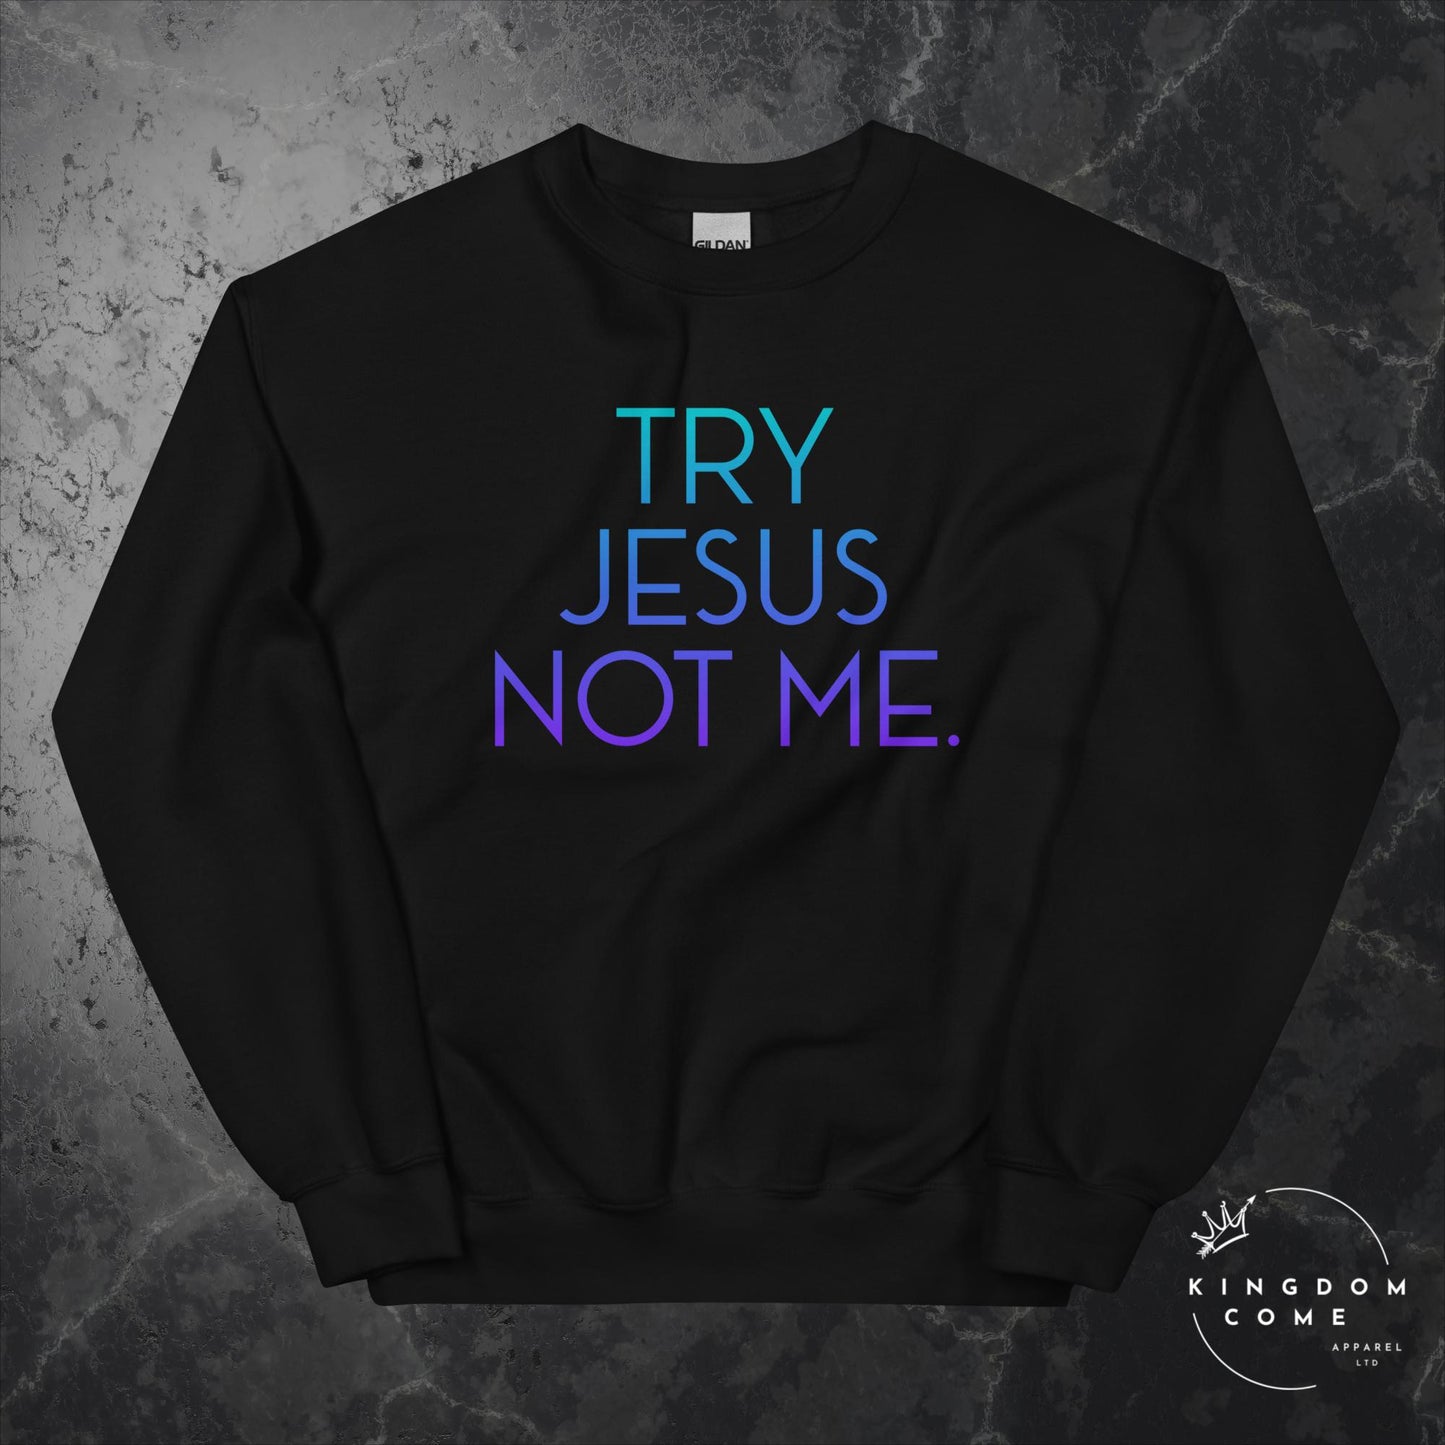 Try Jesus Not Me. - Sweatshirt